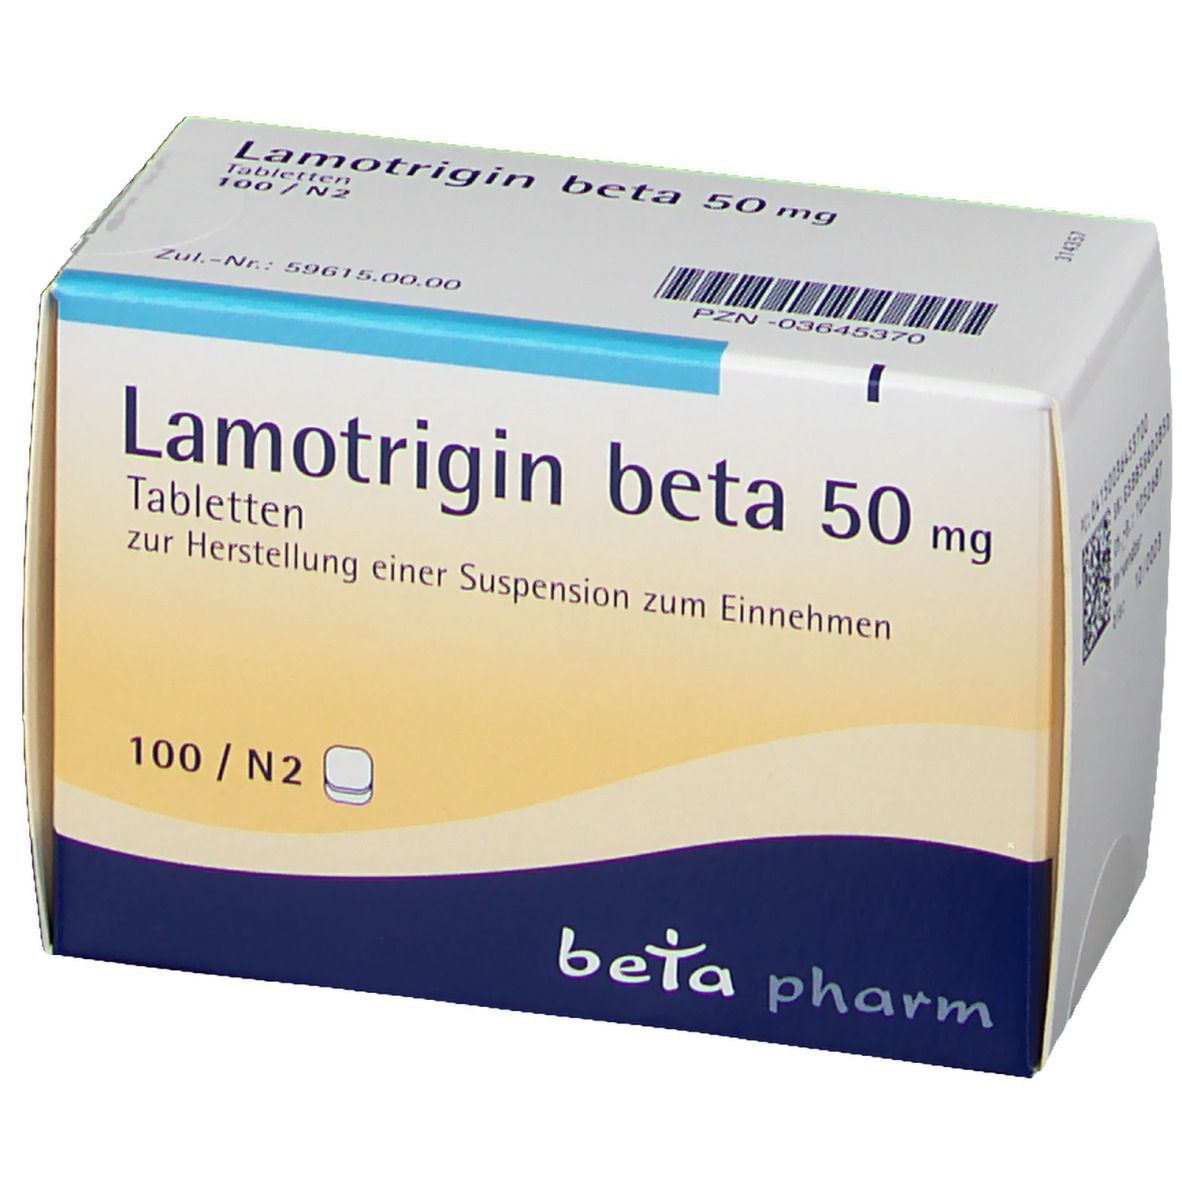 Lamotrigin beta 50 mg